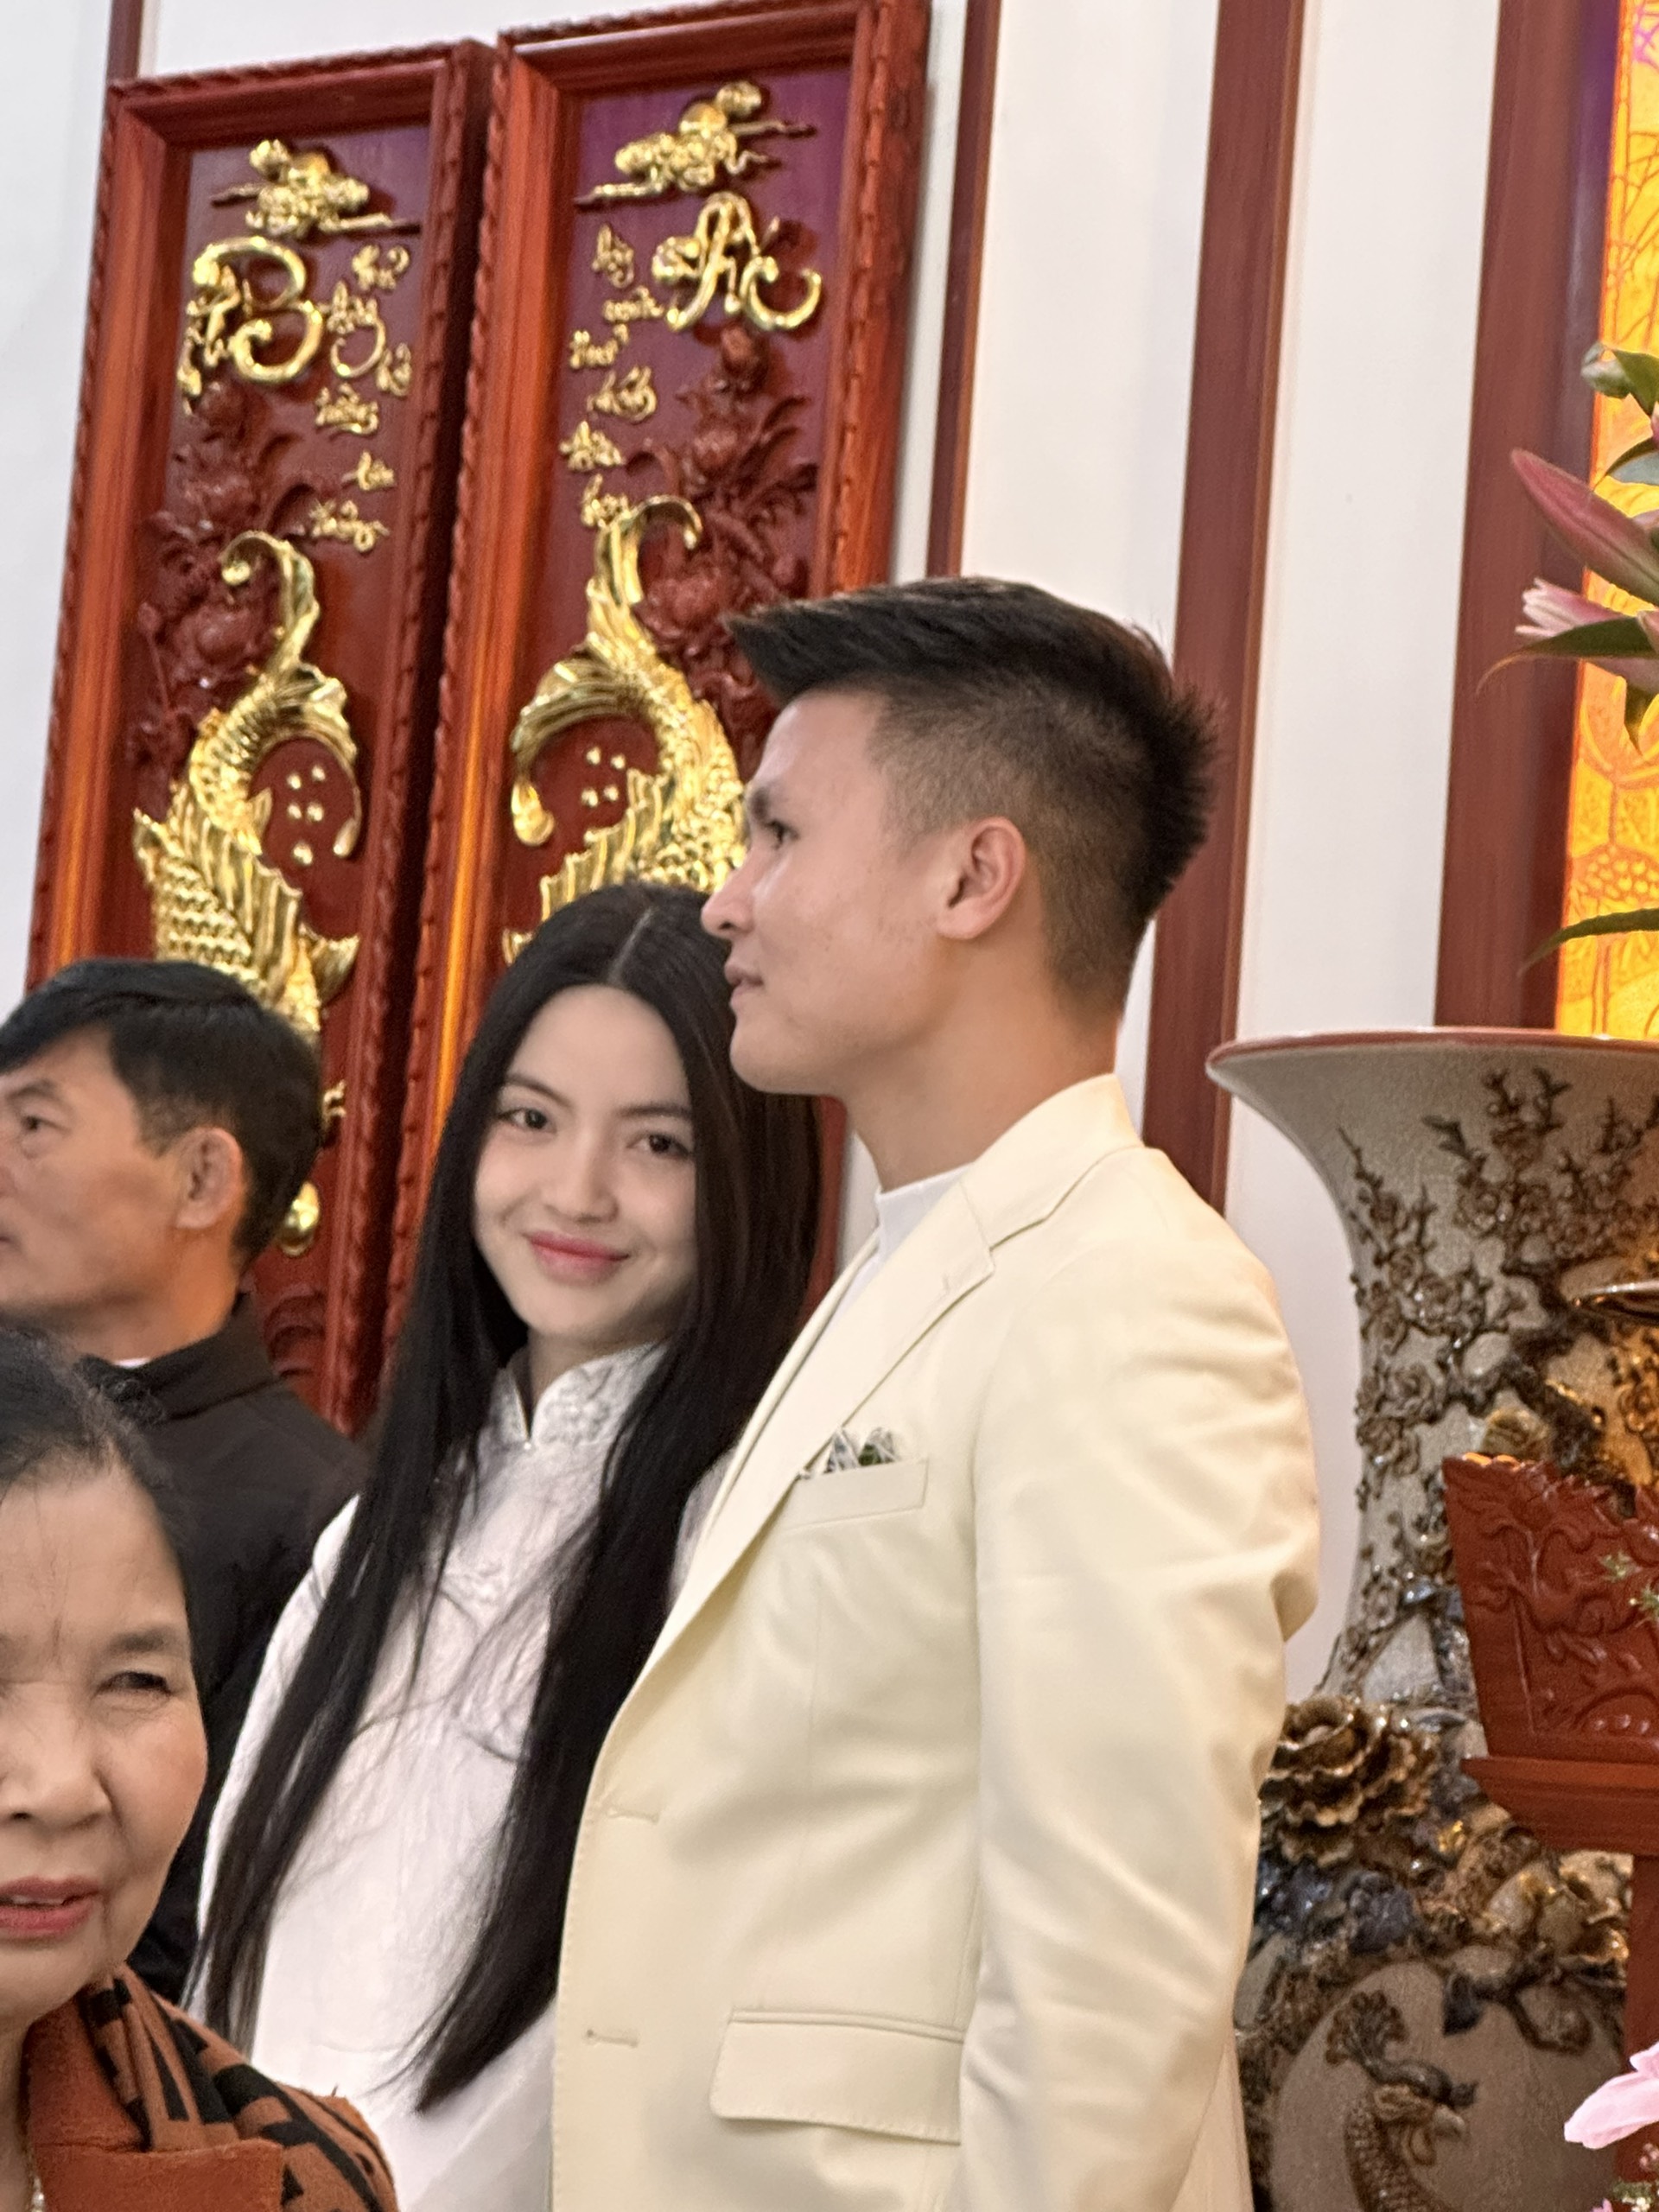 Tráp dạm ngõ hoành tráng Quang Hải mang sang hỏi cưới Chu Thanh Huyền, cô dâu trang điểm nhẹ nhàng vẫn xinh - ảnh 2